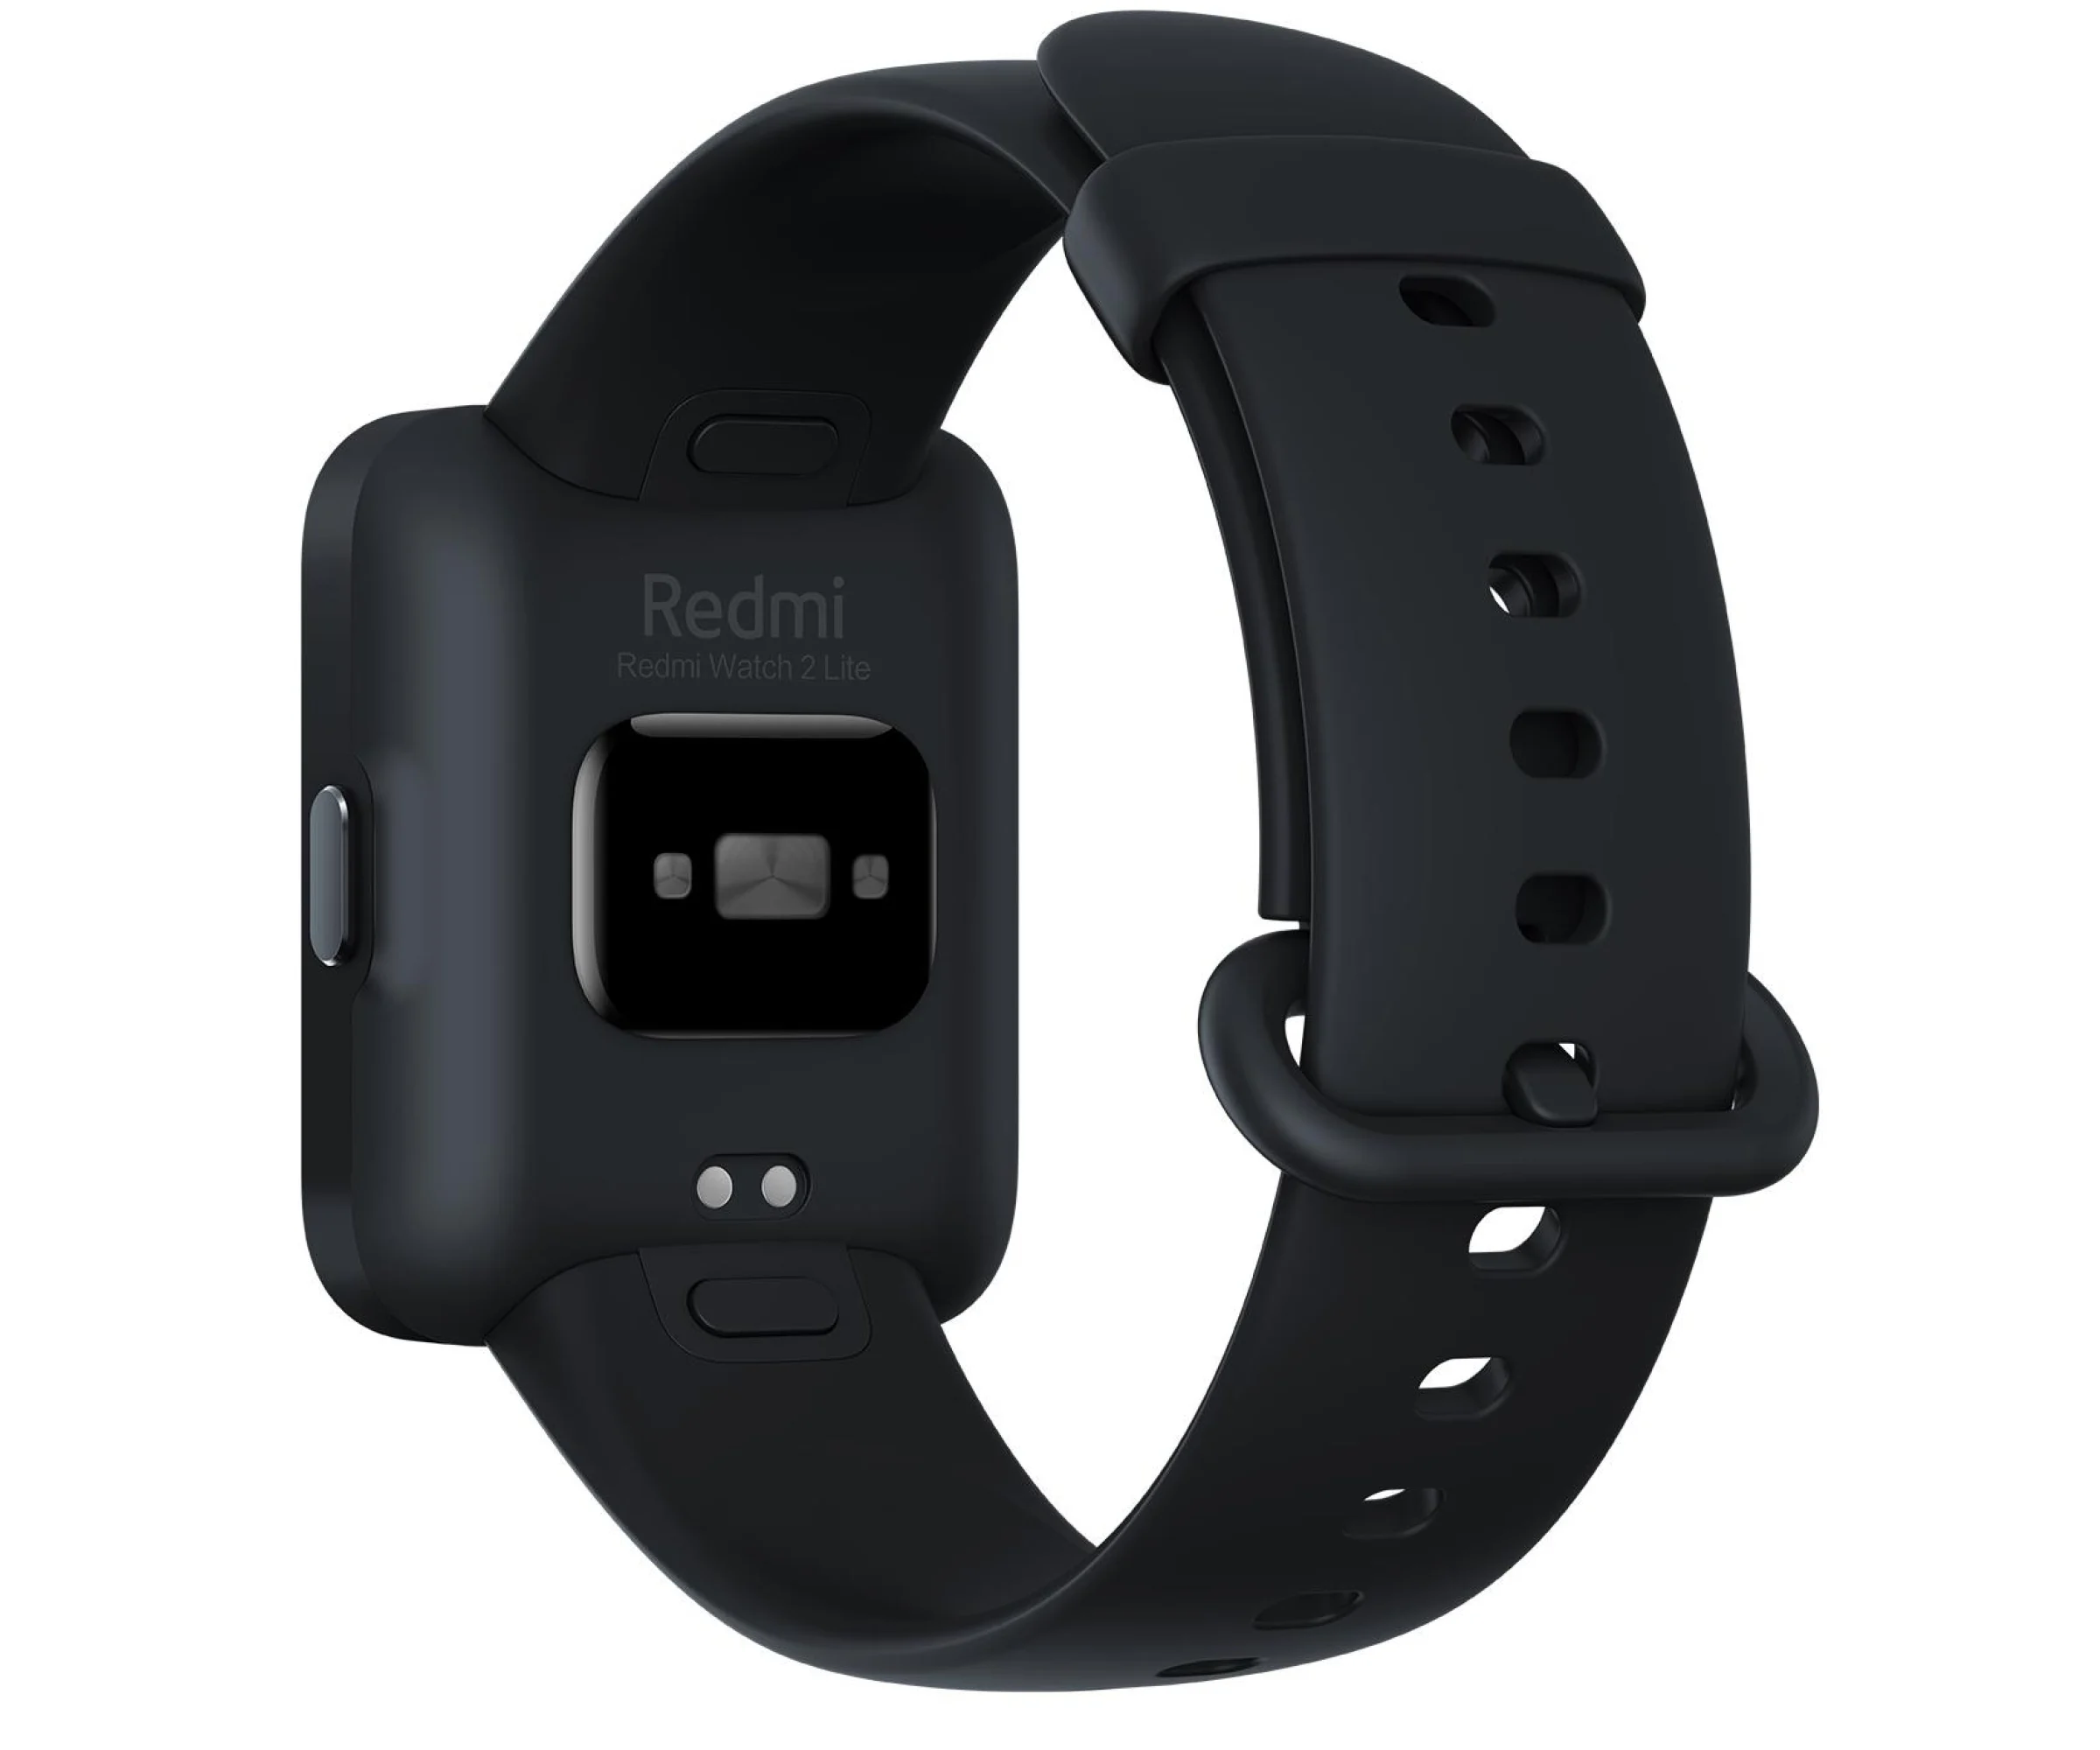 Smartwatch Xiaomi Redmi Watch 2 Lite Black - VAT 23%